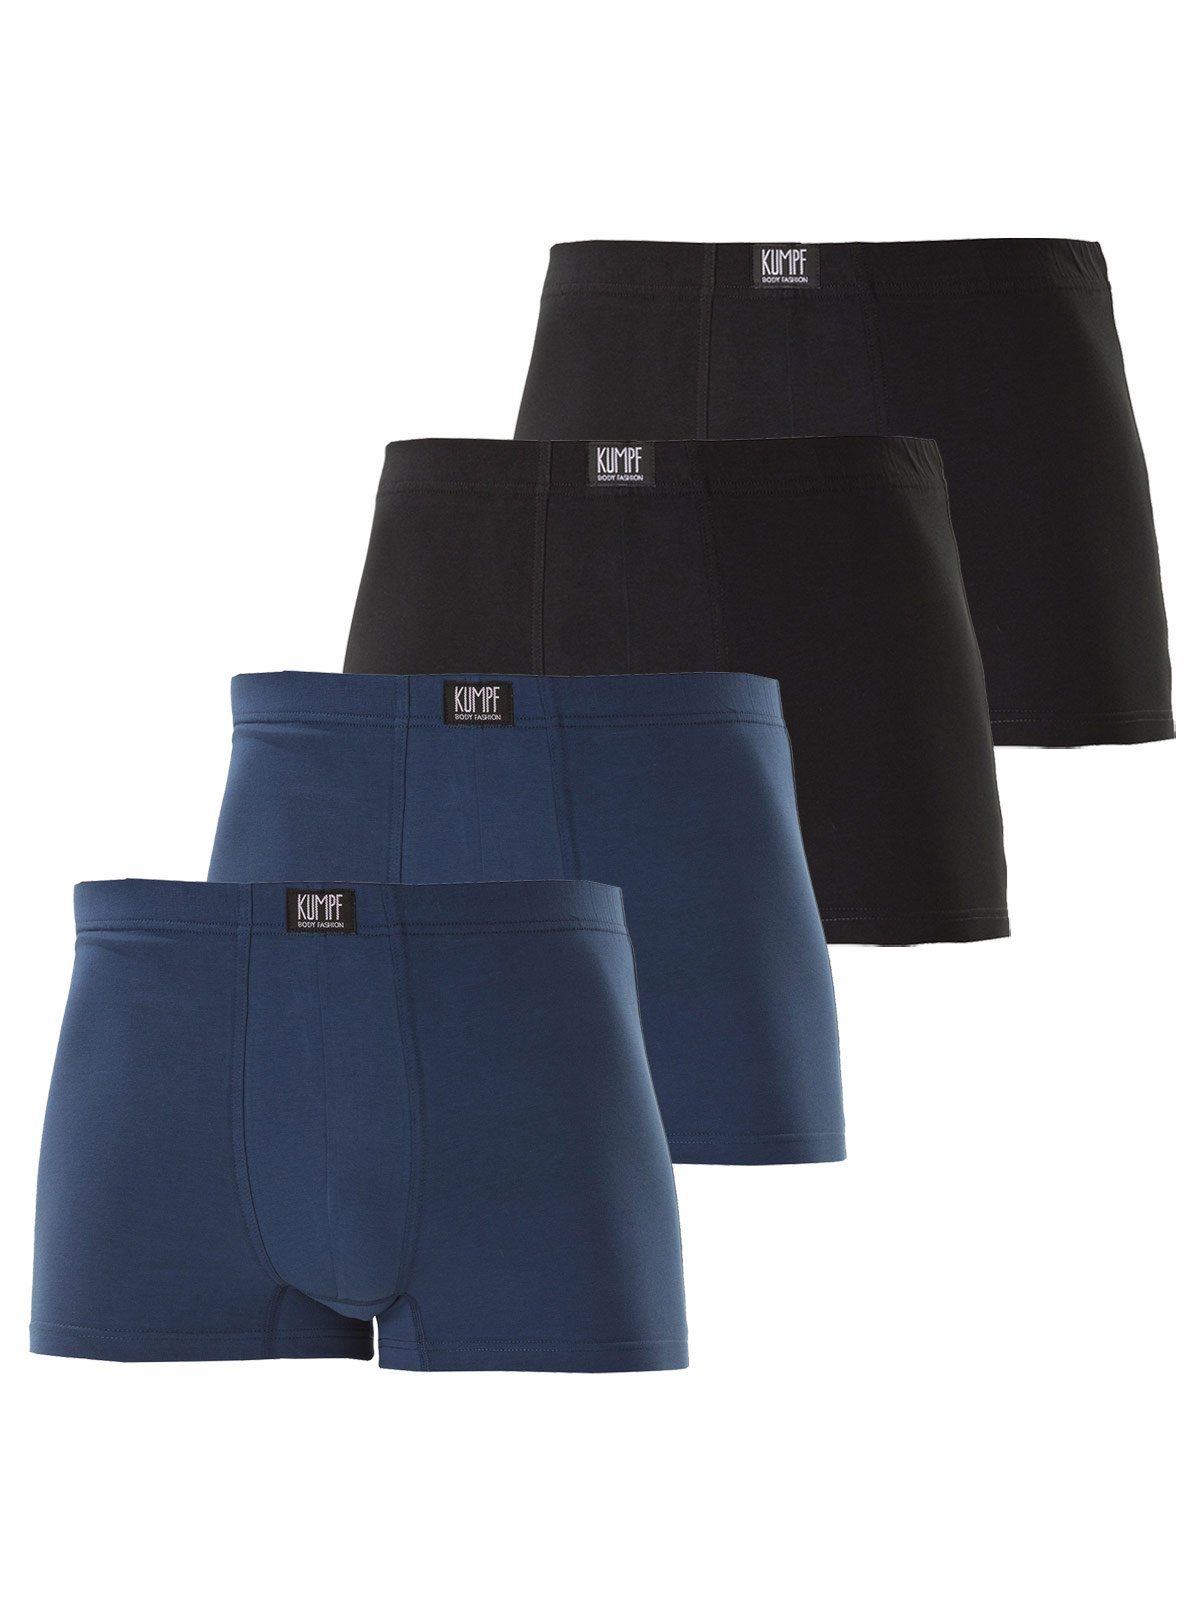 KUMPF Retro Pants 4er Sparpack Herren Pants Bio Cotton (Spar-Set, 4-St) hohe Markenqualität darkblue schwarz